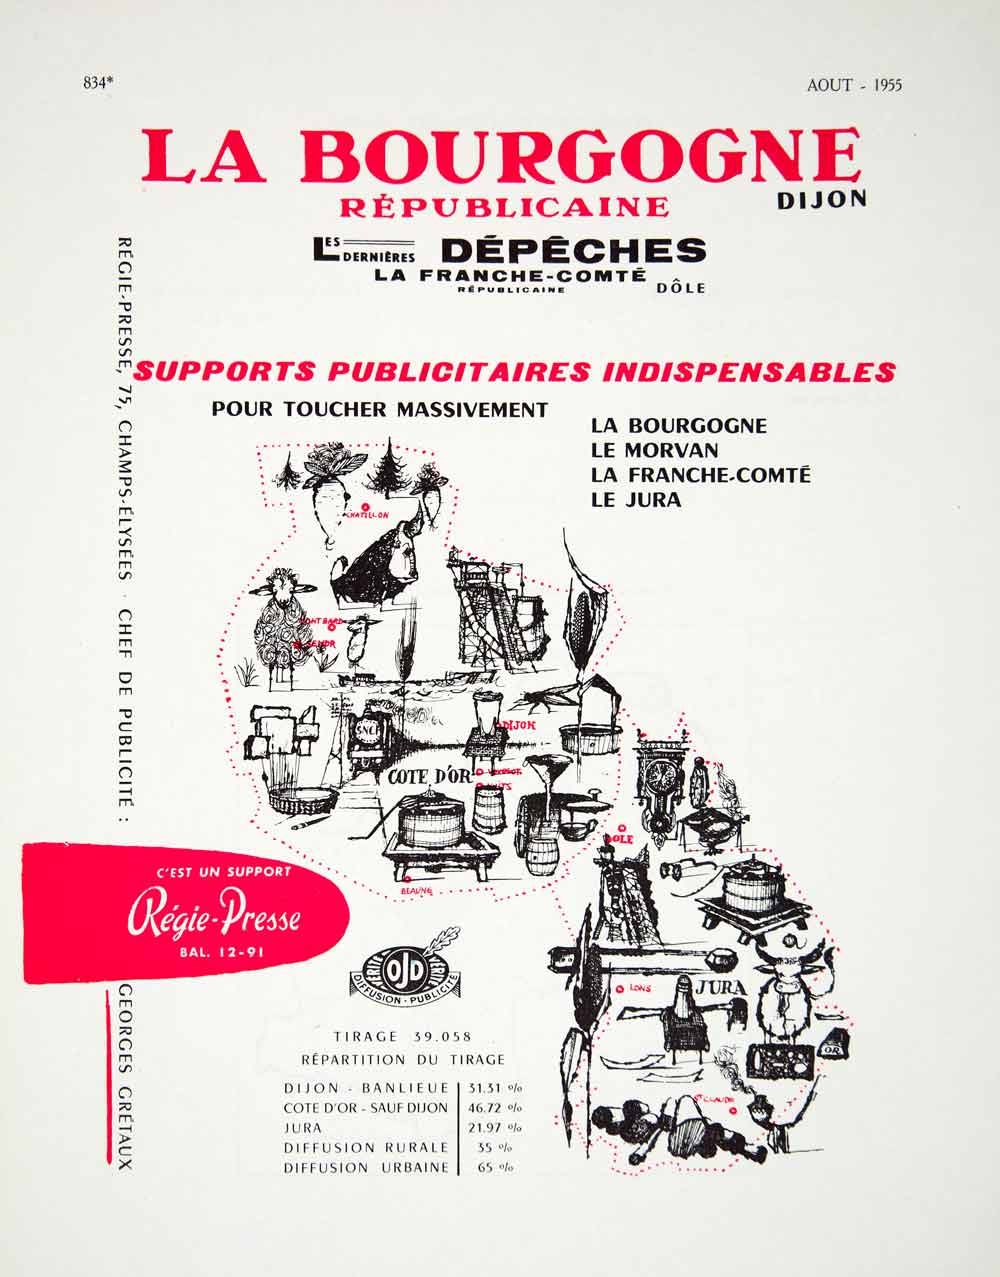 1955 Lithograph French Ad La Bourgogne Republicaine Les Dernieres Depeches VENA4